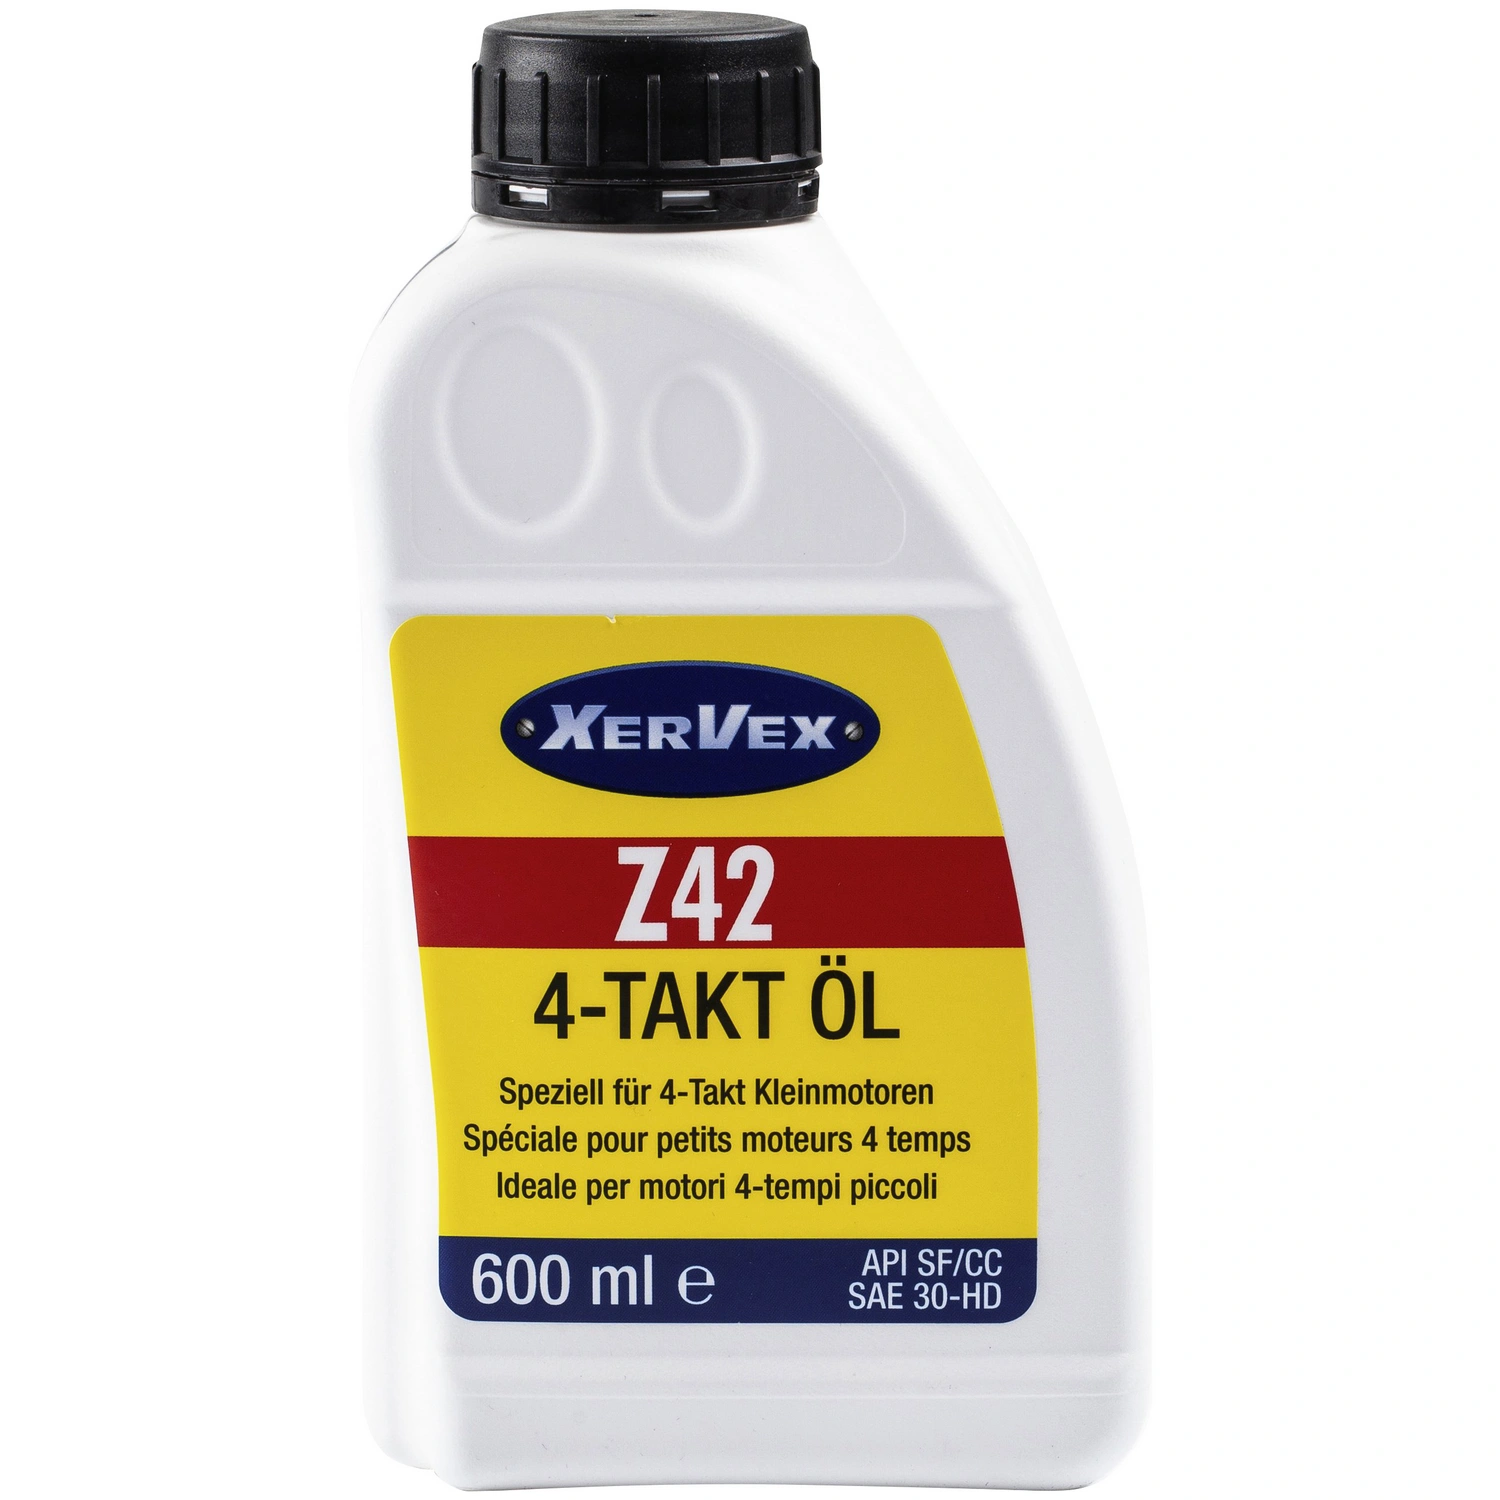 2-Takt Öl mineralisch 1 Liter Dosierflasche Kettensägenöl